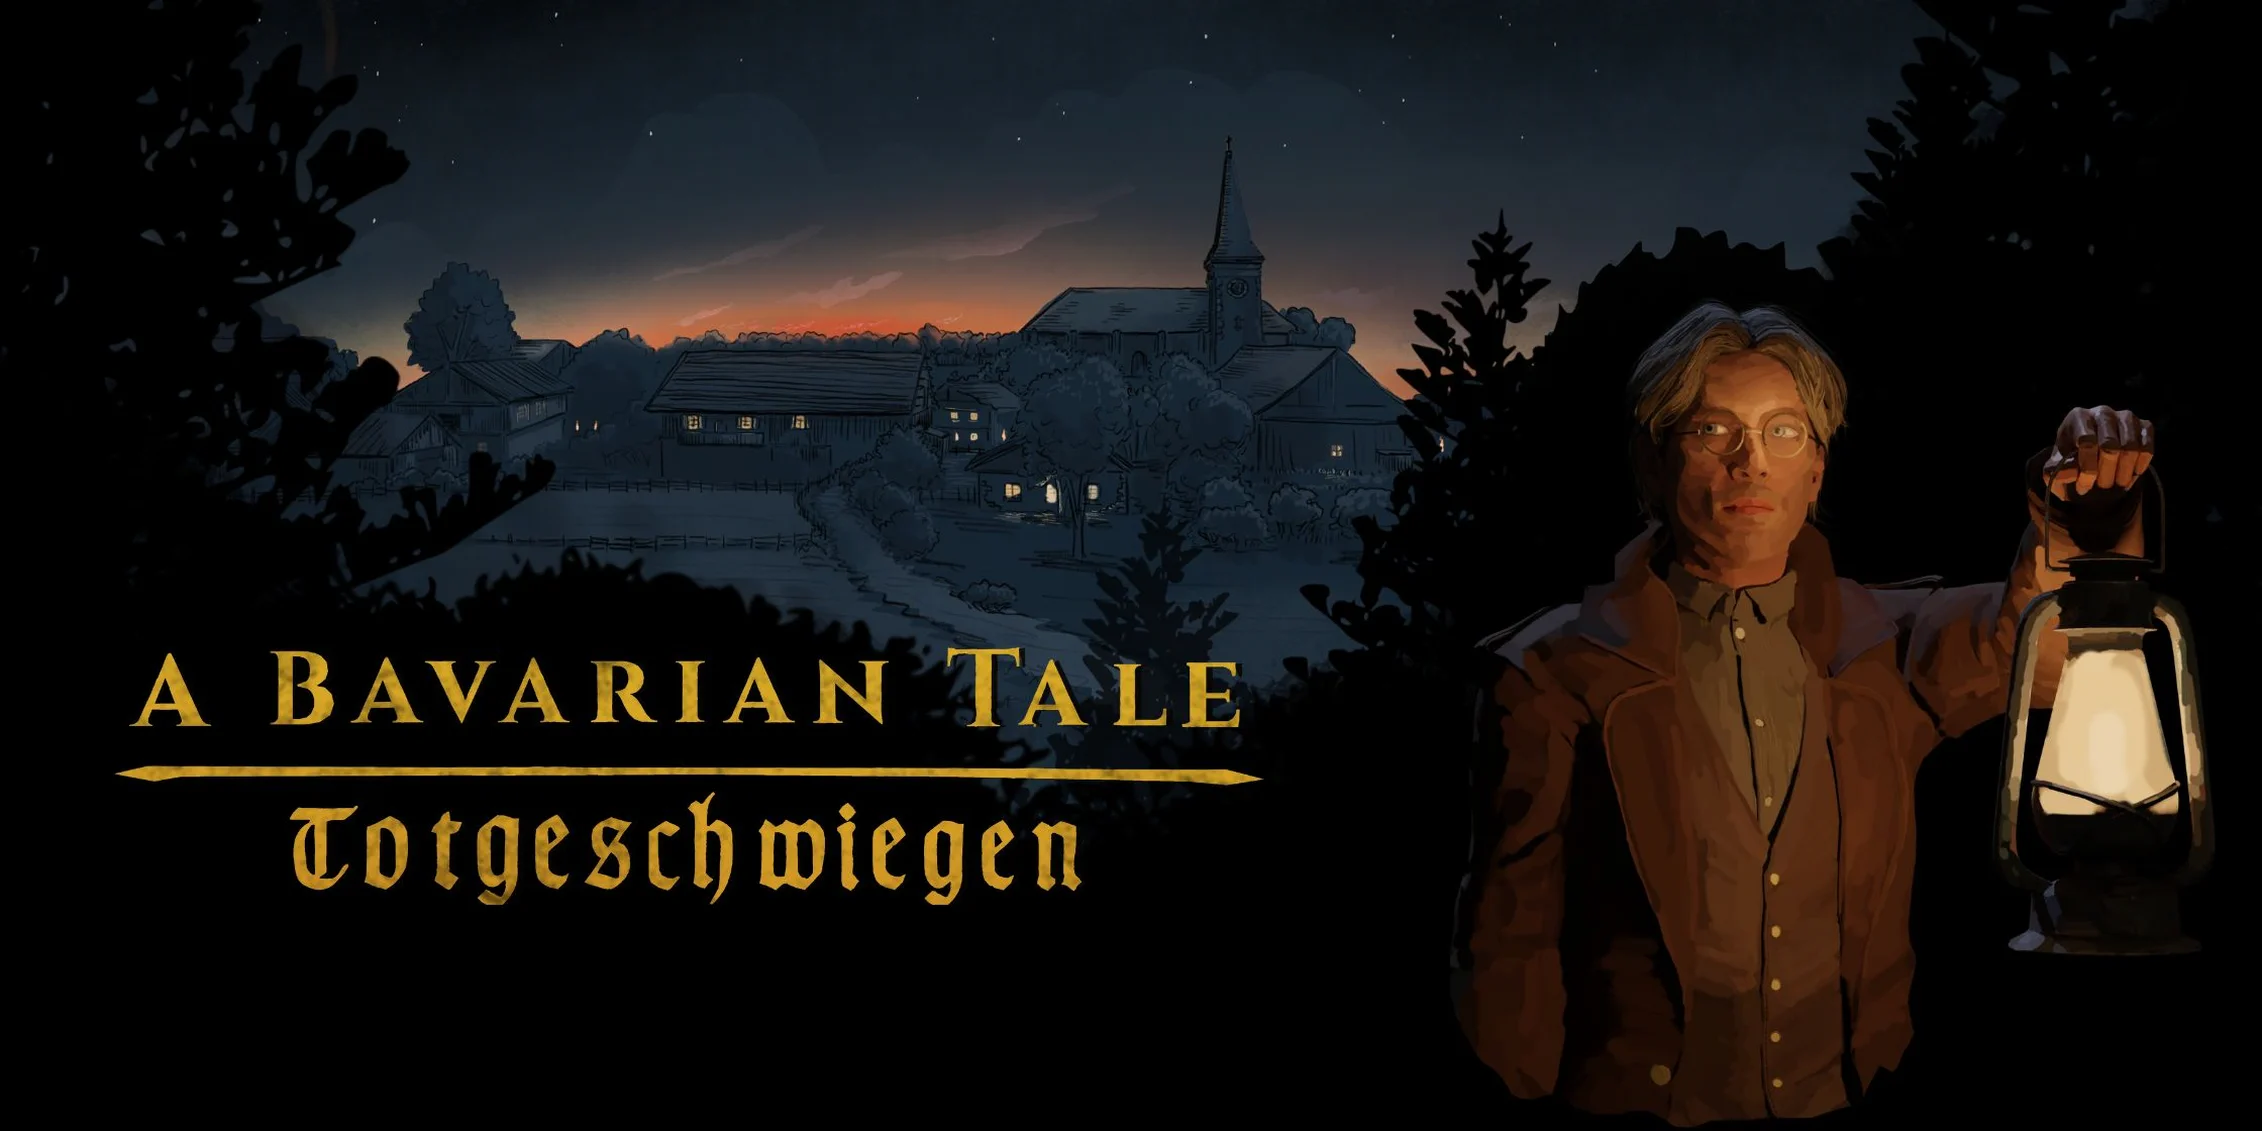 Ролевой детектив A Bavarian Tale: Totgeschwiegen вышел в Steam